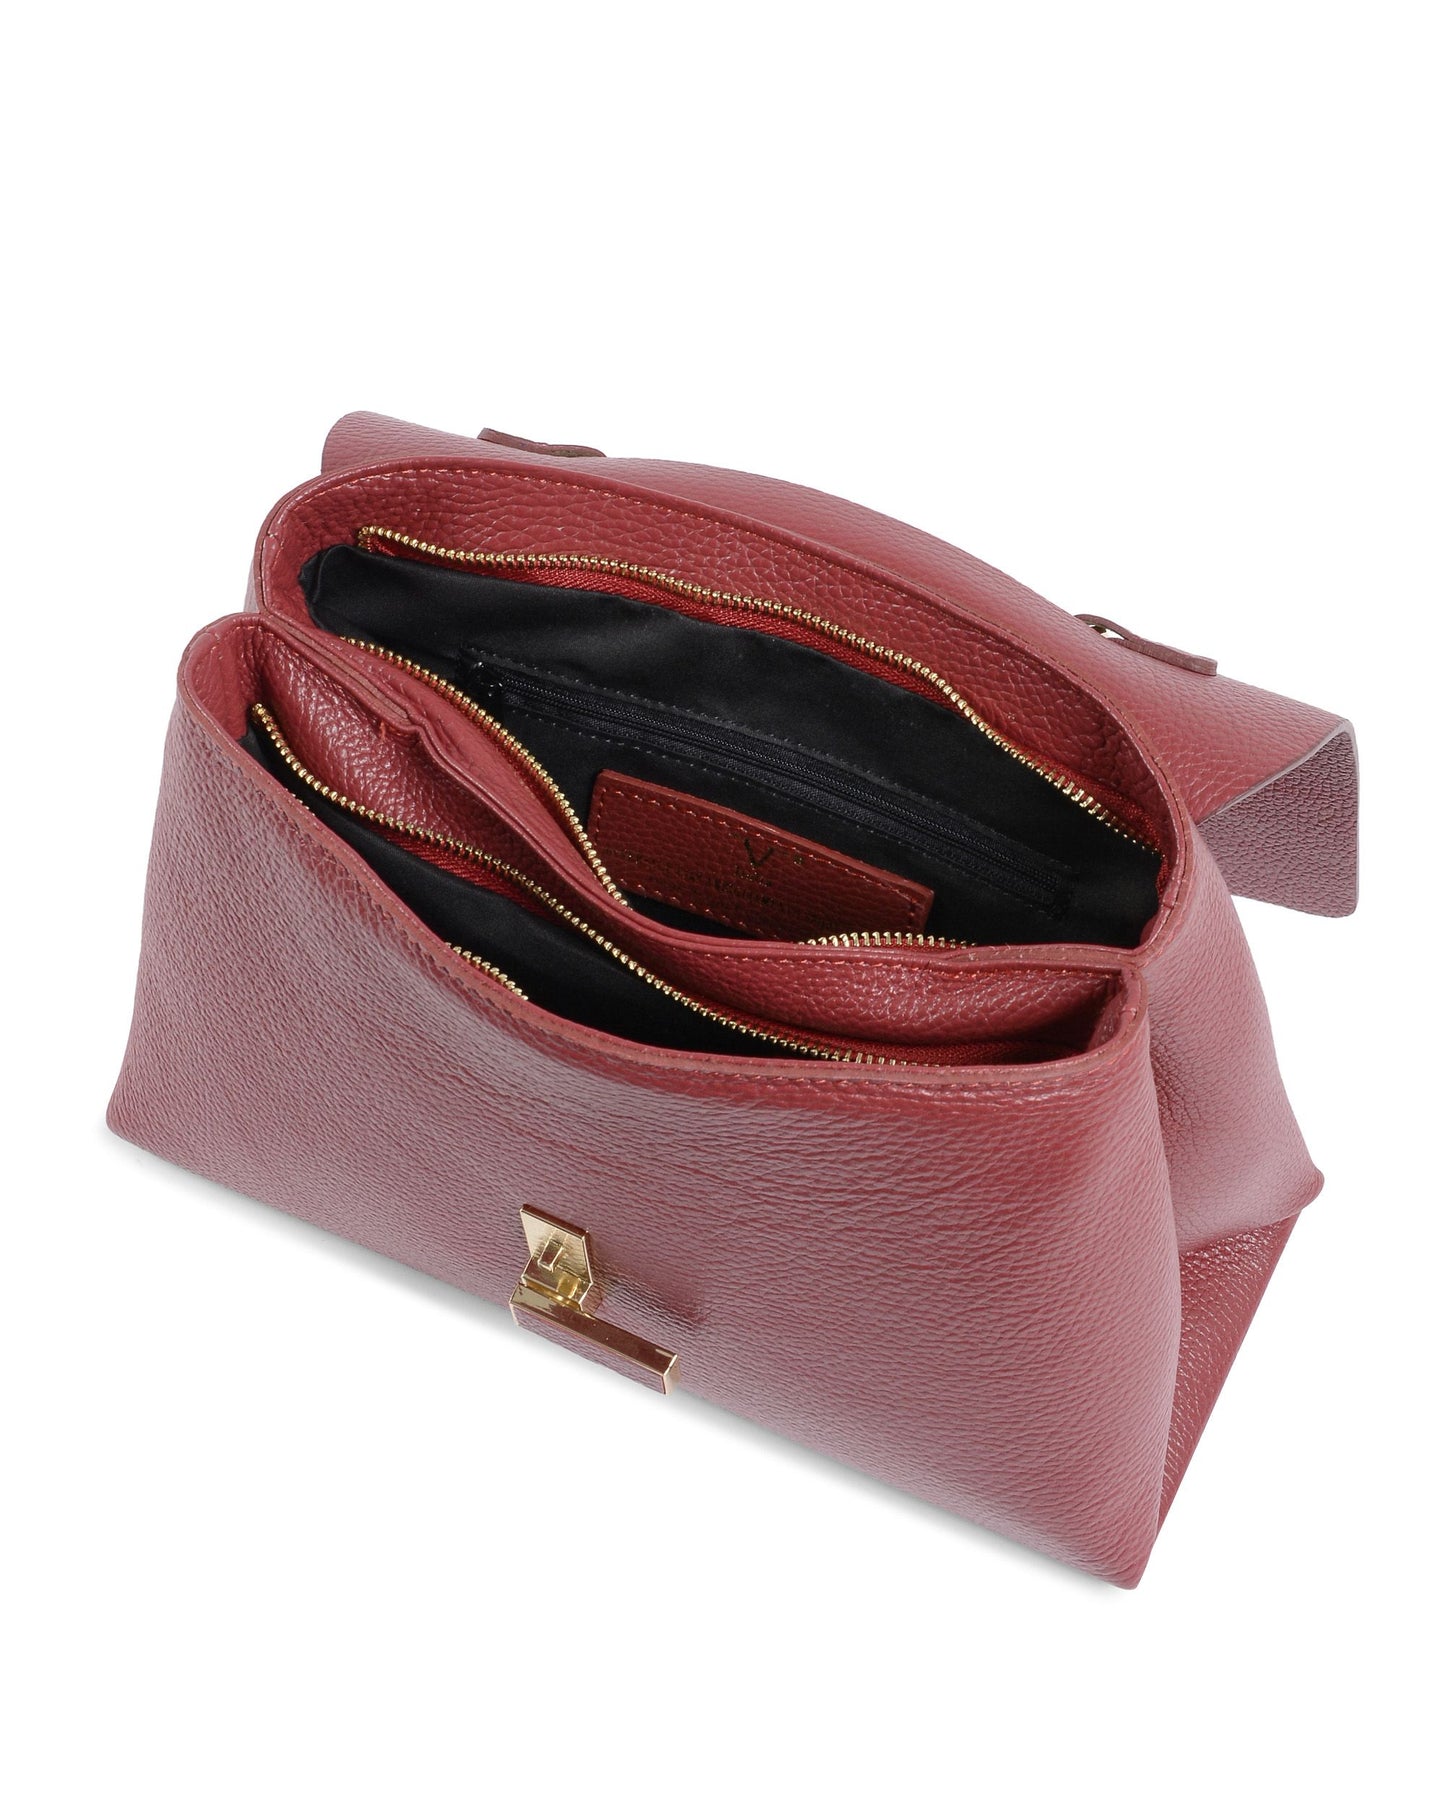 V Italia Womens Handbag Red 10520 DOLLARO RUBINO